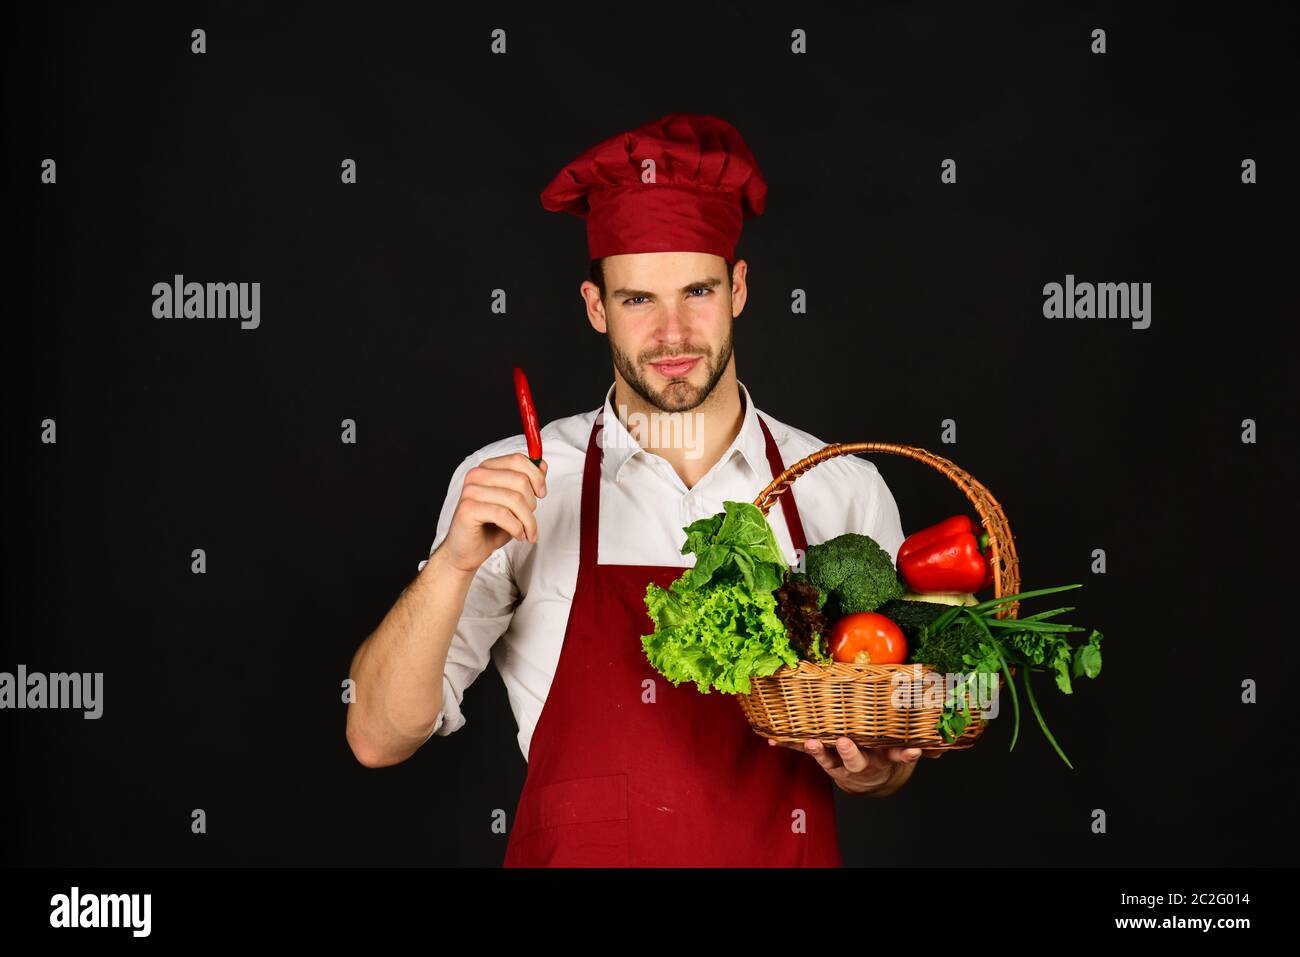 Le chef en uniforme bordeaux tient le piment rouge à la main. Concept de  repas naturel et épicé. Homme avec barbe et légumes sur fond noir. Cuisinez  avec un visage souriant, du